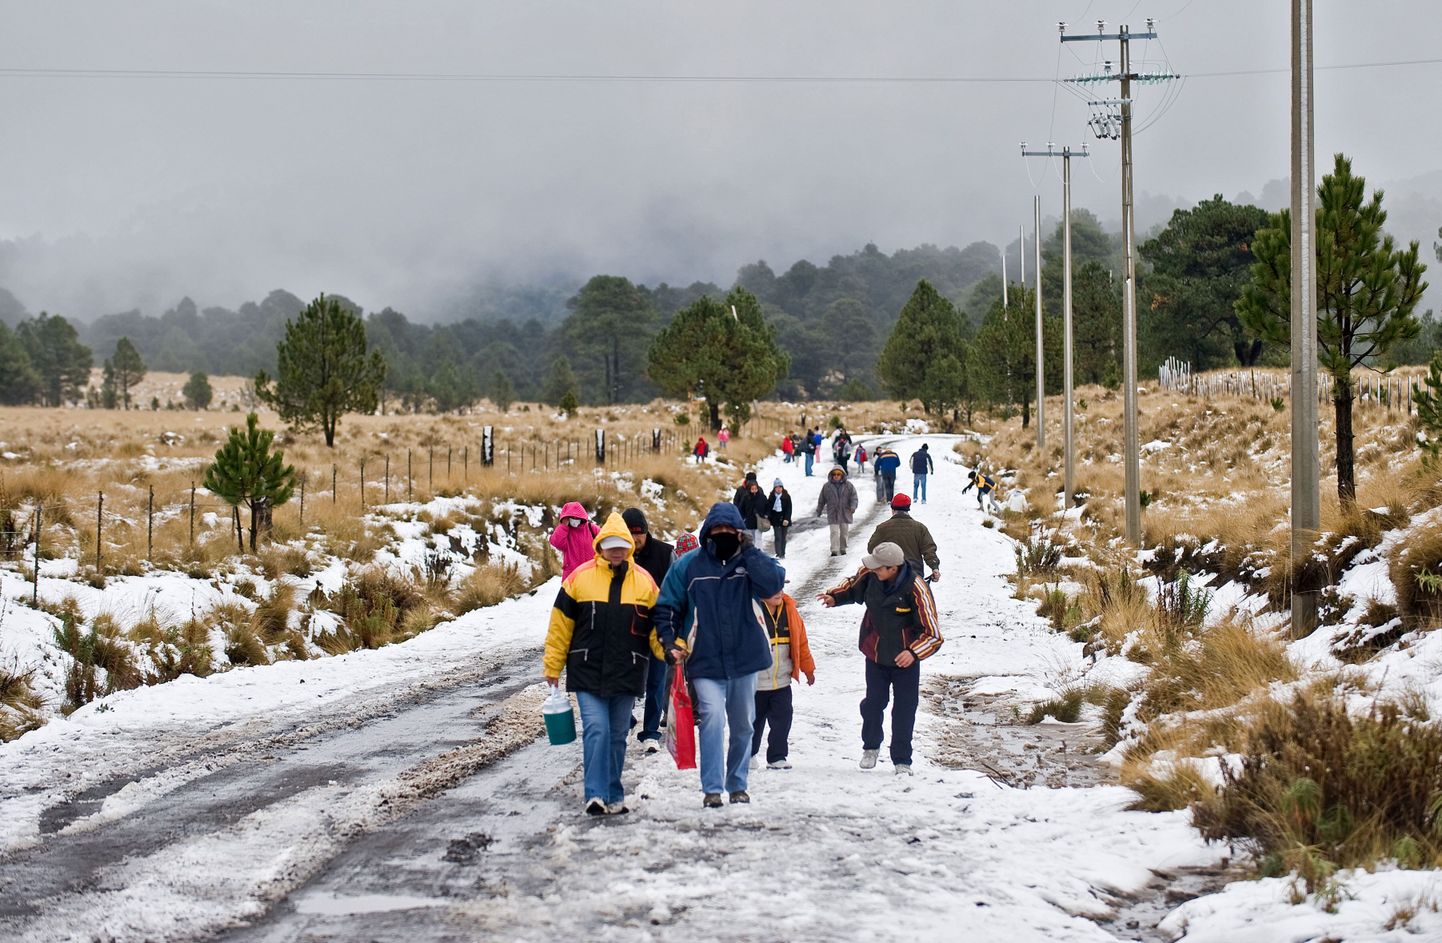 Erakordne külm nõudis Mehhikos üheksa inimese elu. Fotol talv Puebla osariigis